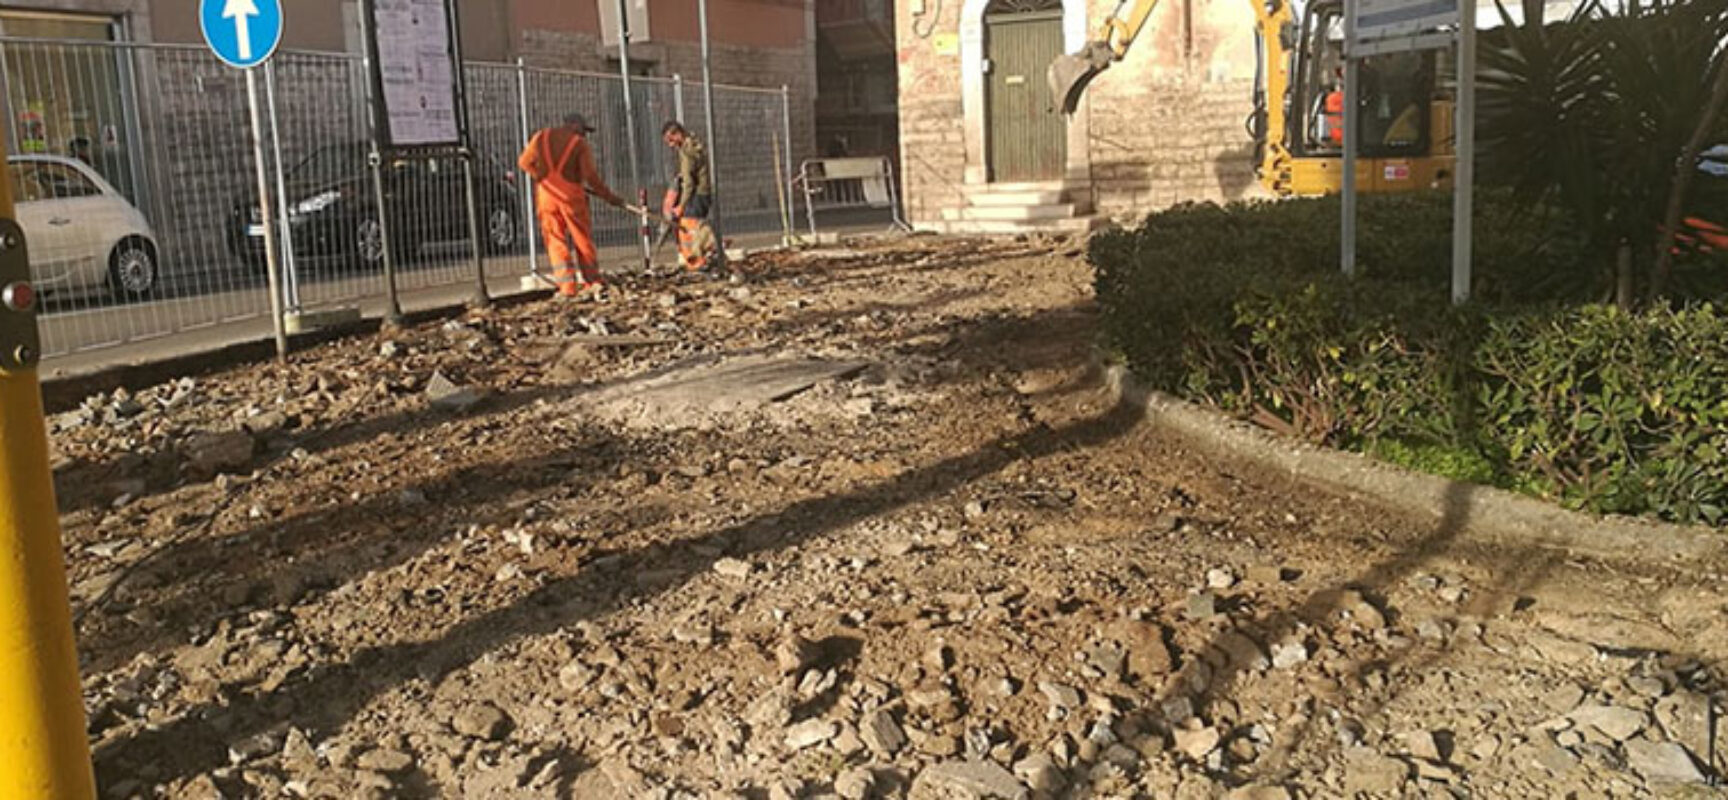 Cominciati lavori a villetta Logoluso, Angarano: “Tanti cantieri sono attivi in tutta la Città”